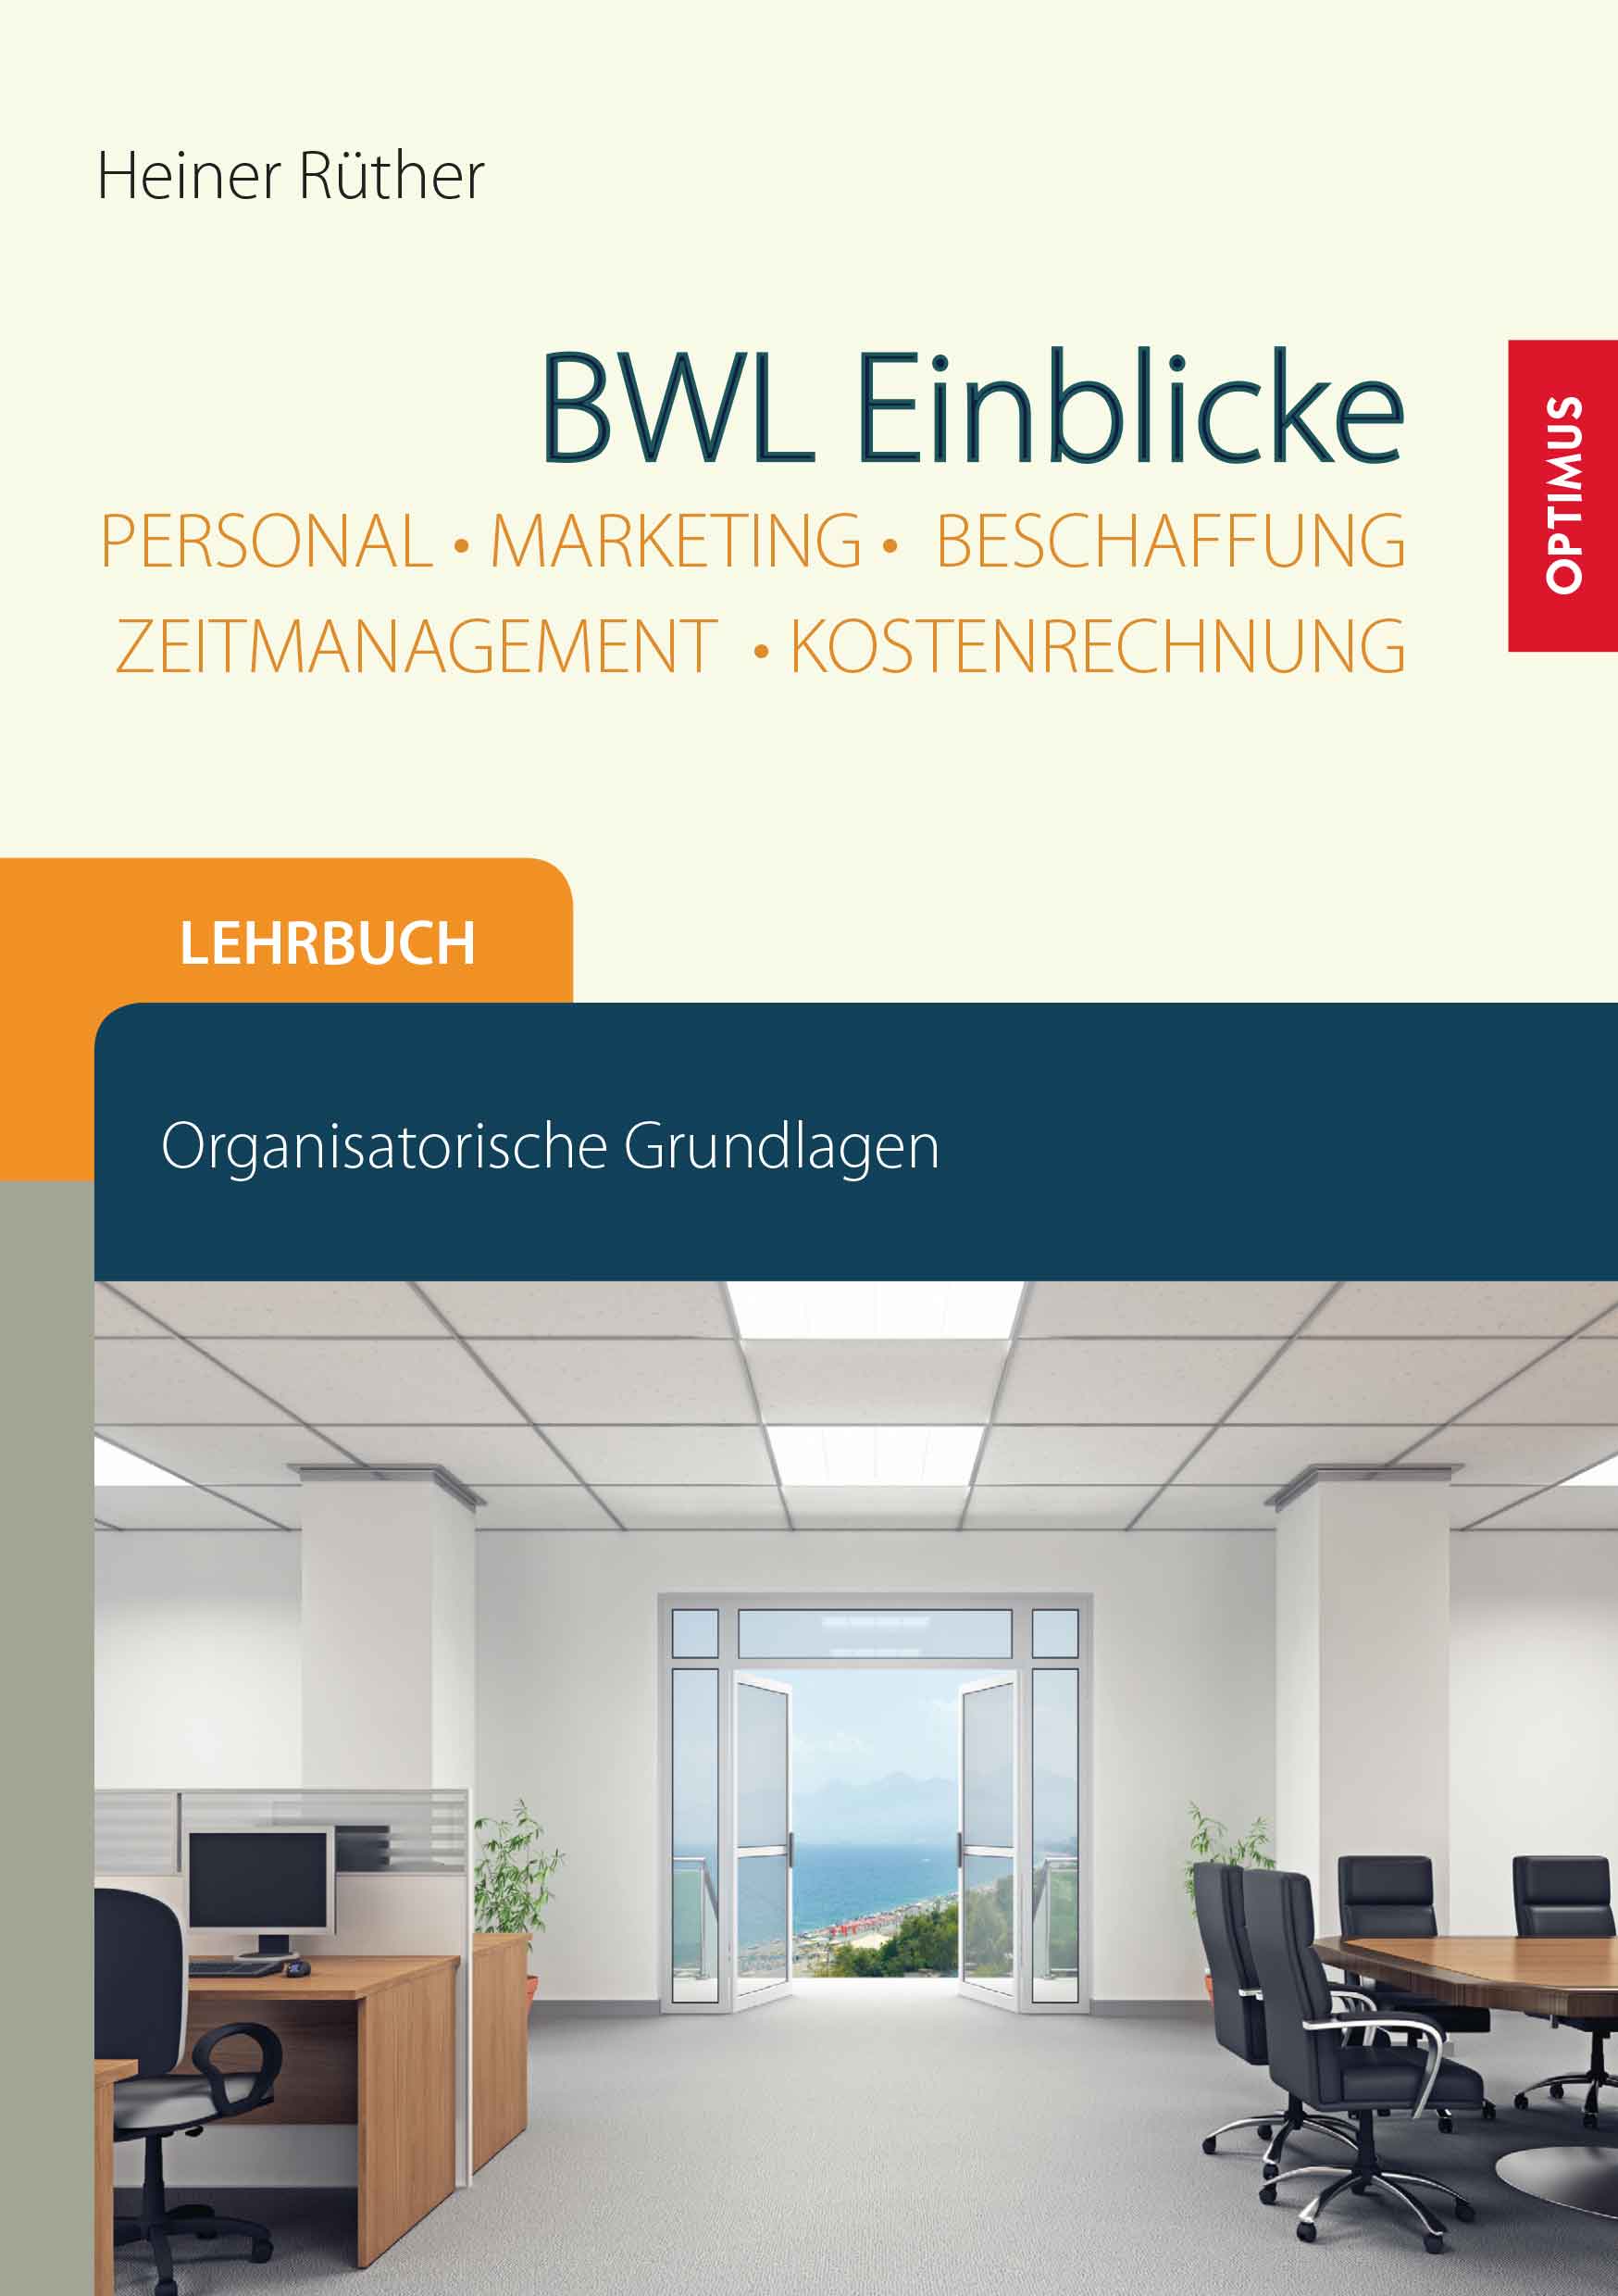 BWL Einblicke - Personal, Marketing, Beschaffung, Zeitmanagement, Kostenrechnung SIEVERSMEDIEN